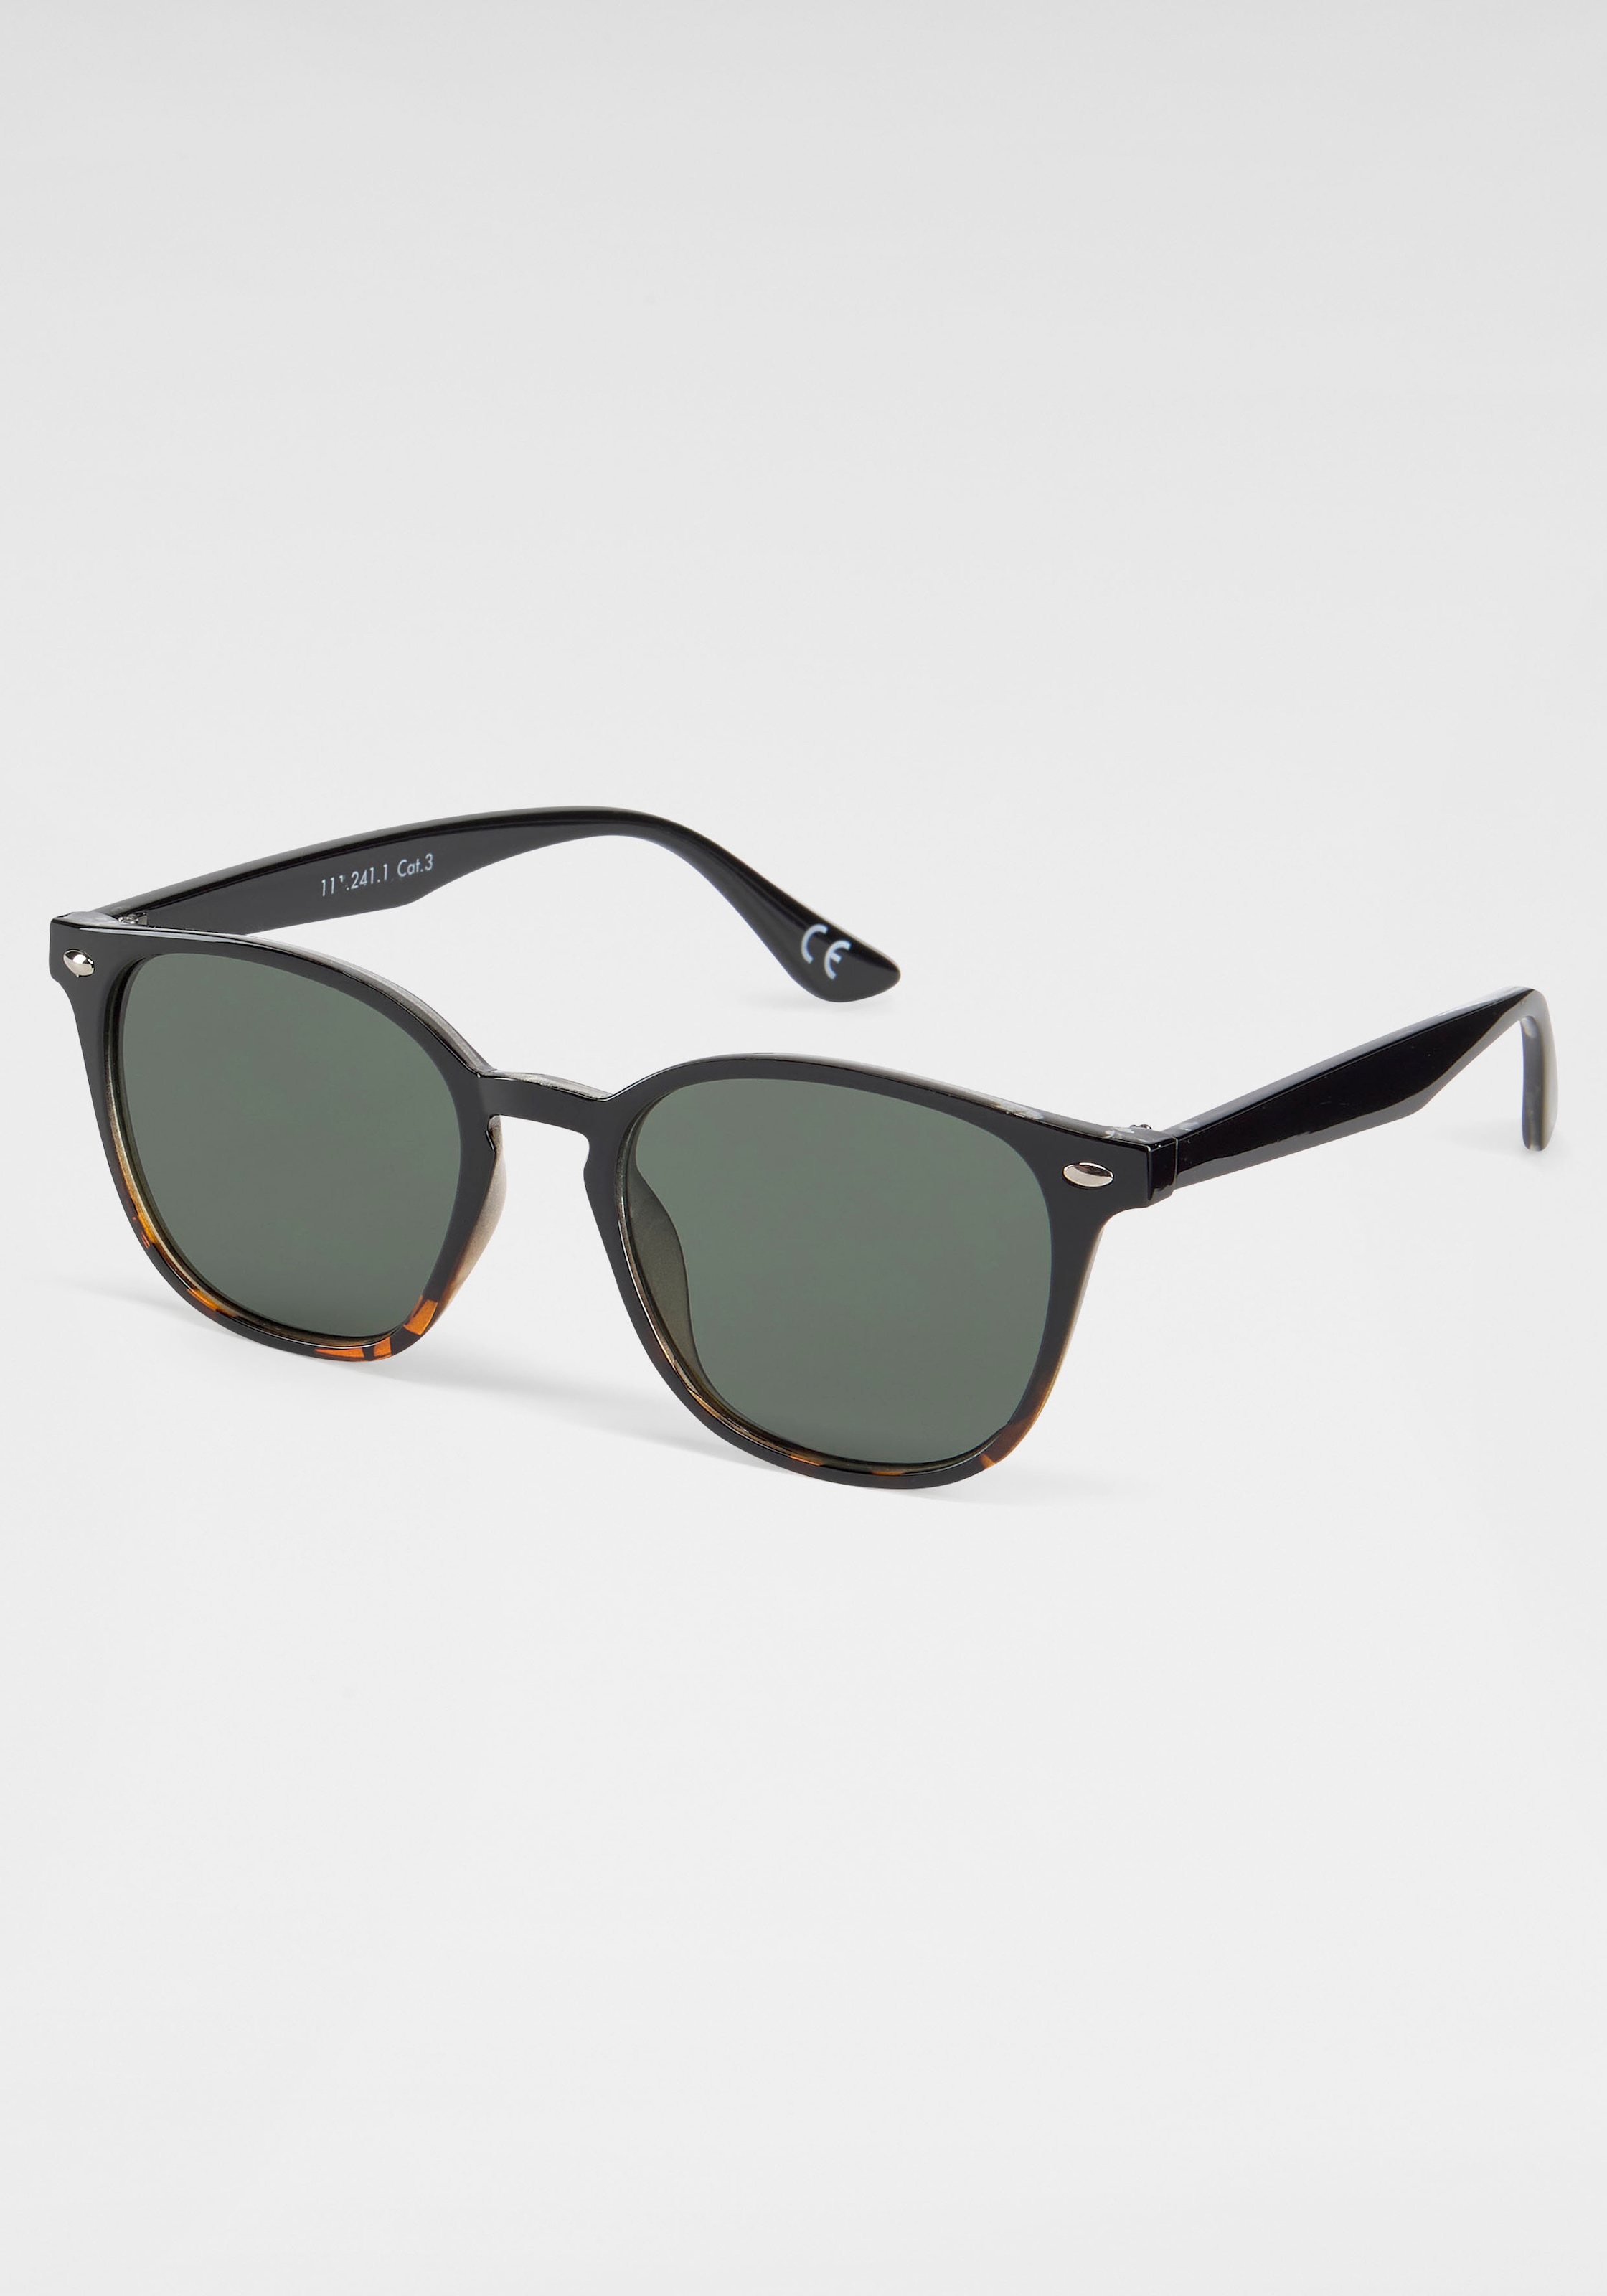 PRIMETTA Eyewear Sonnenbrille kaufen online OTTO bei